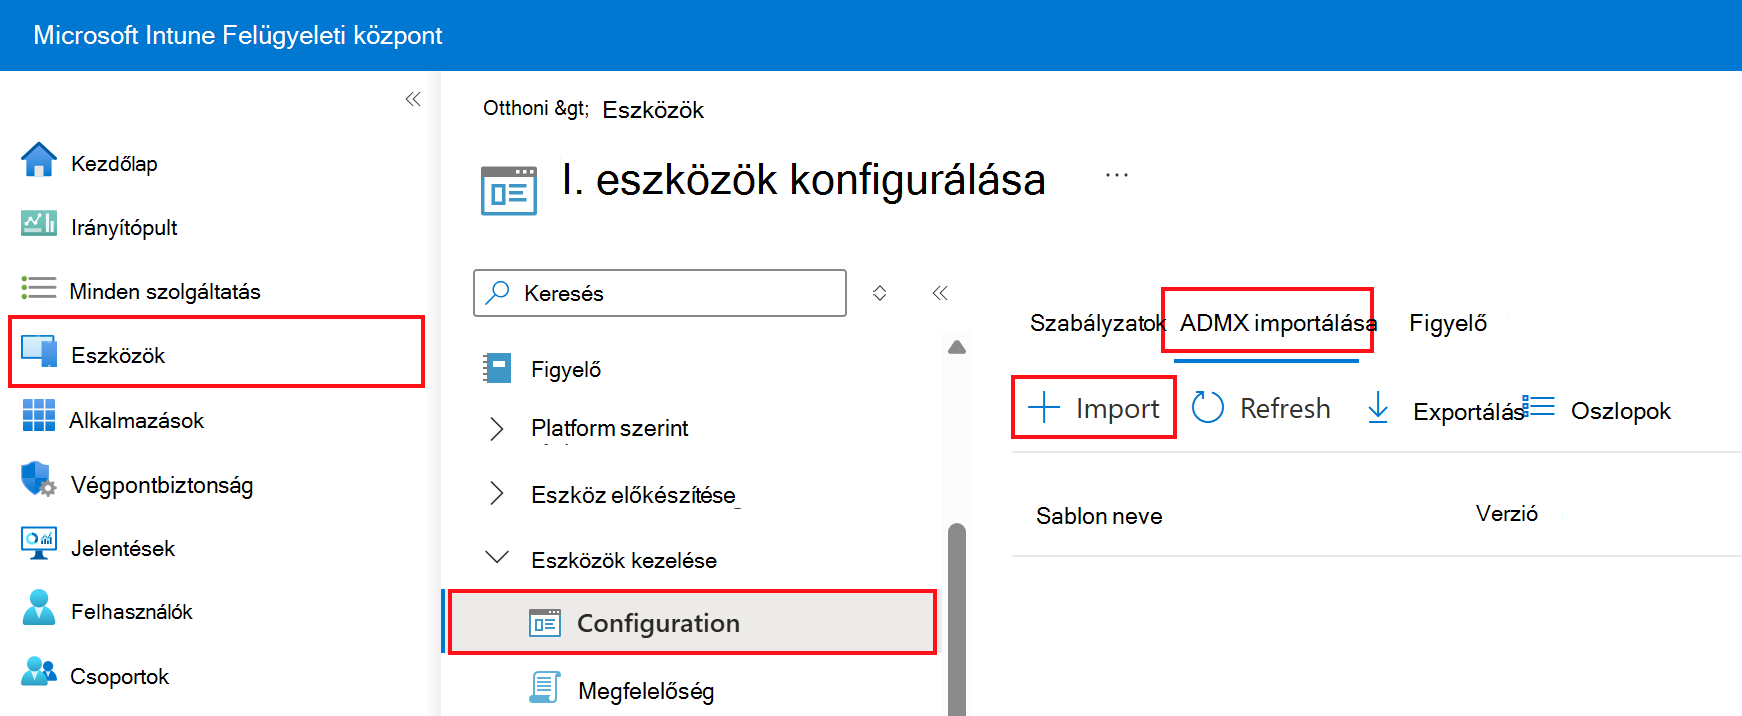 Képernyőkép az egyéni ADMX és ADML hozzáadásáról és importálásáról. Lépjen az Eszközök > konfigurációs profiljai > ADMX importálása a Microsoft Intune-ban és az Intune Felügyeleti központban területre.